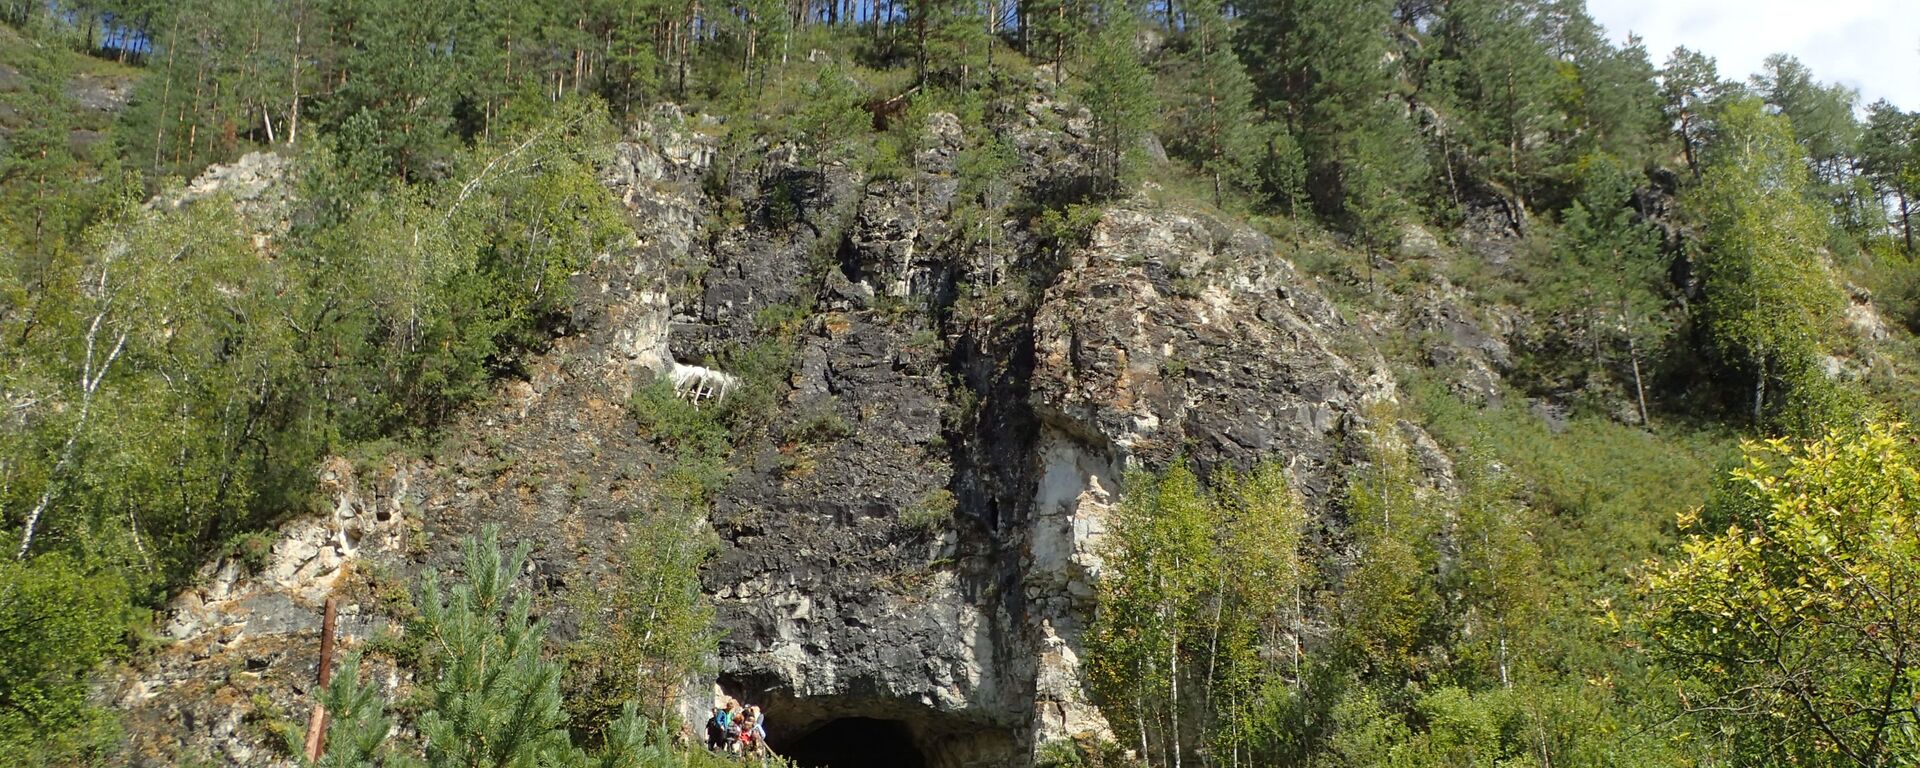 Exterior da caverna Denisova, na Sibéria, Rússia, onde cientistas da Austrália, Alemanha e Rússia encontraram uma história ocupacional de diferentes grupos humanos - Sputnik Brasil, 1920, 30.11.2021